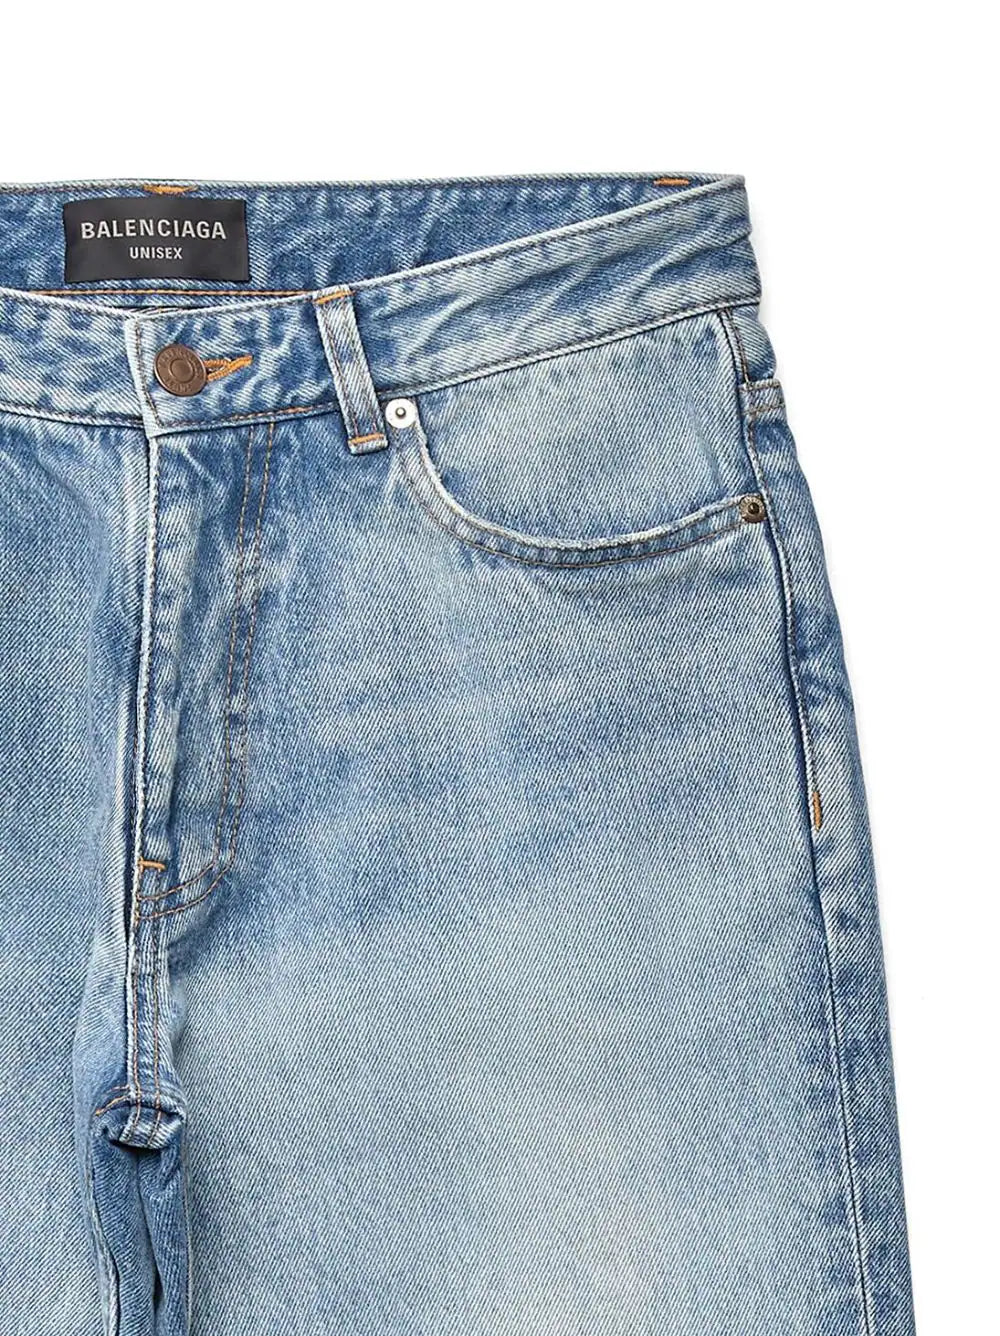 Balenciaga short en jean